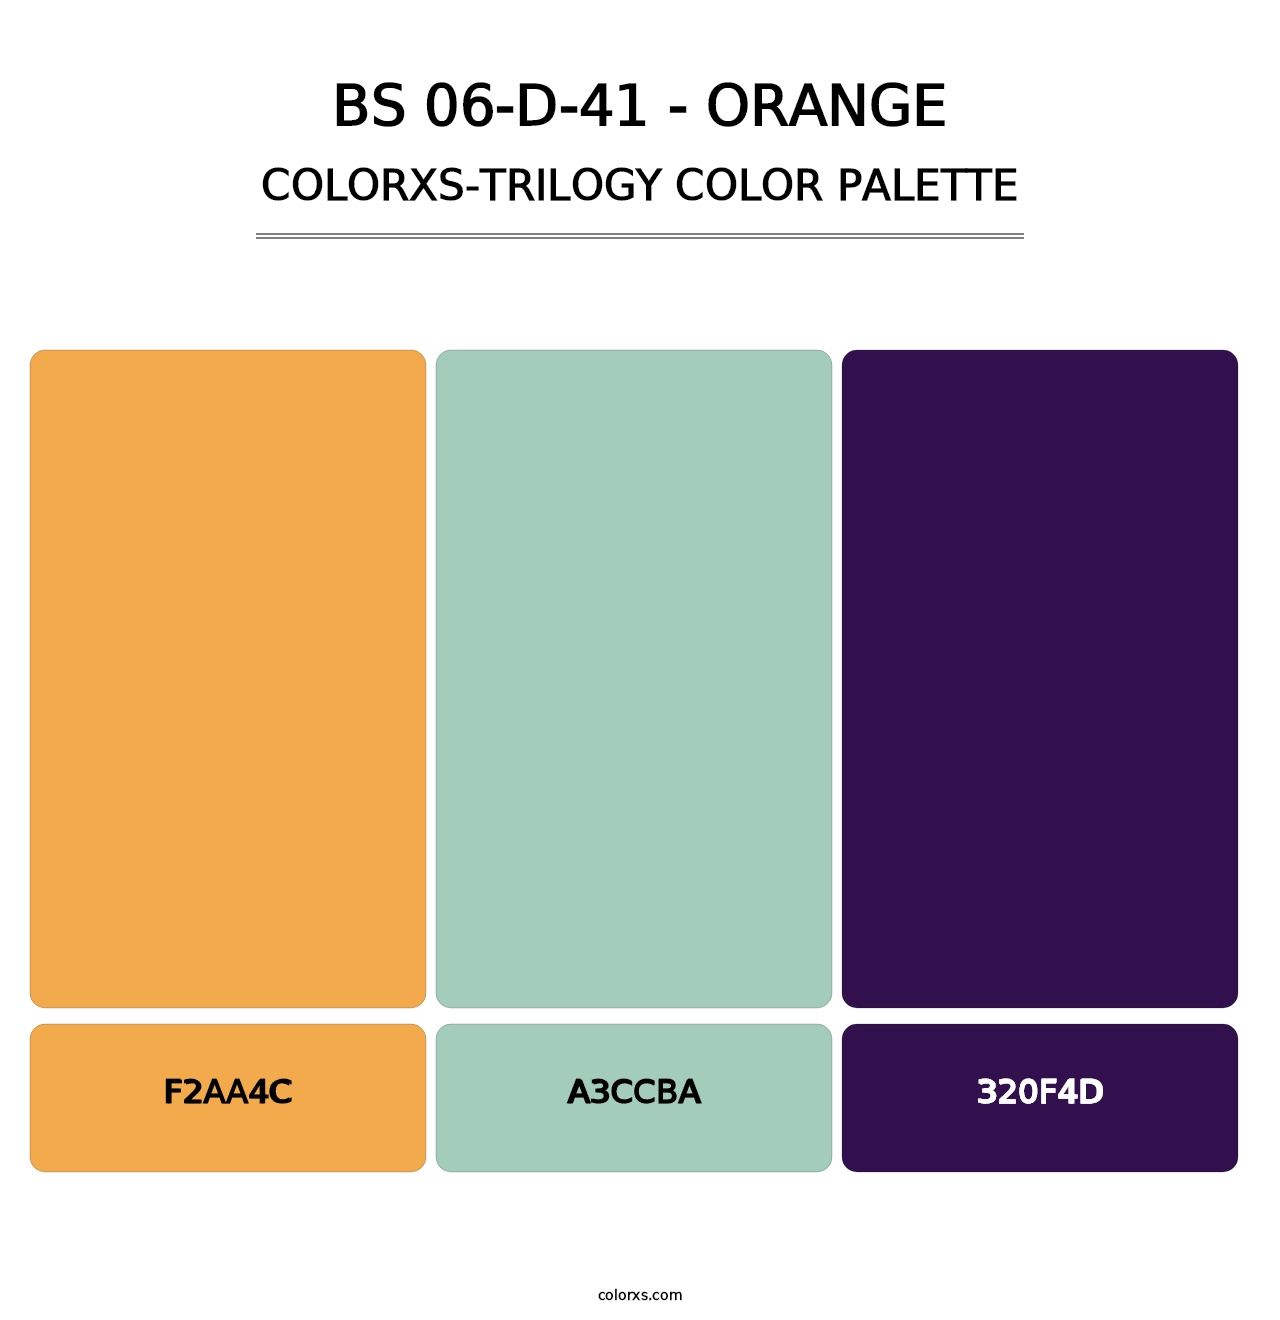 BS 06-D-41 - Orange - Colorxs Trilogy Palette